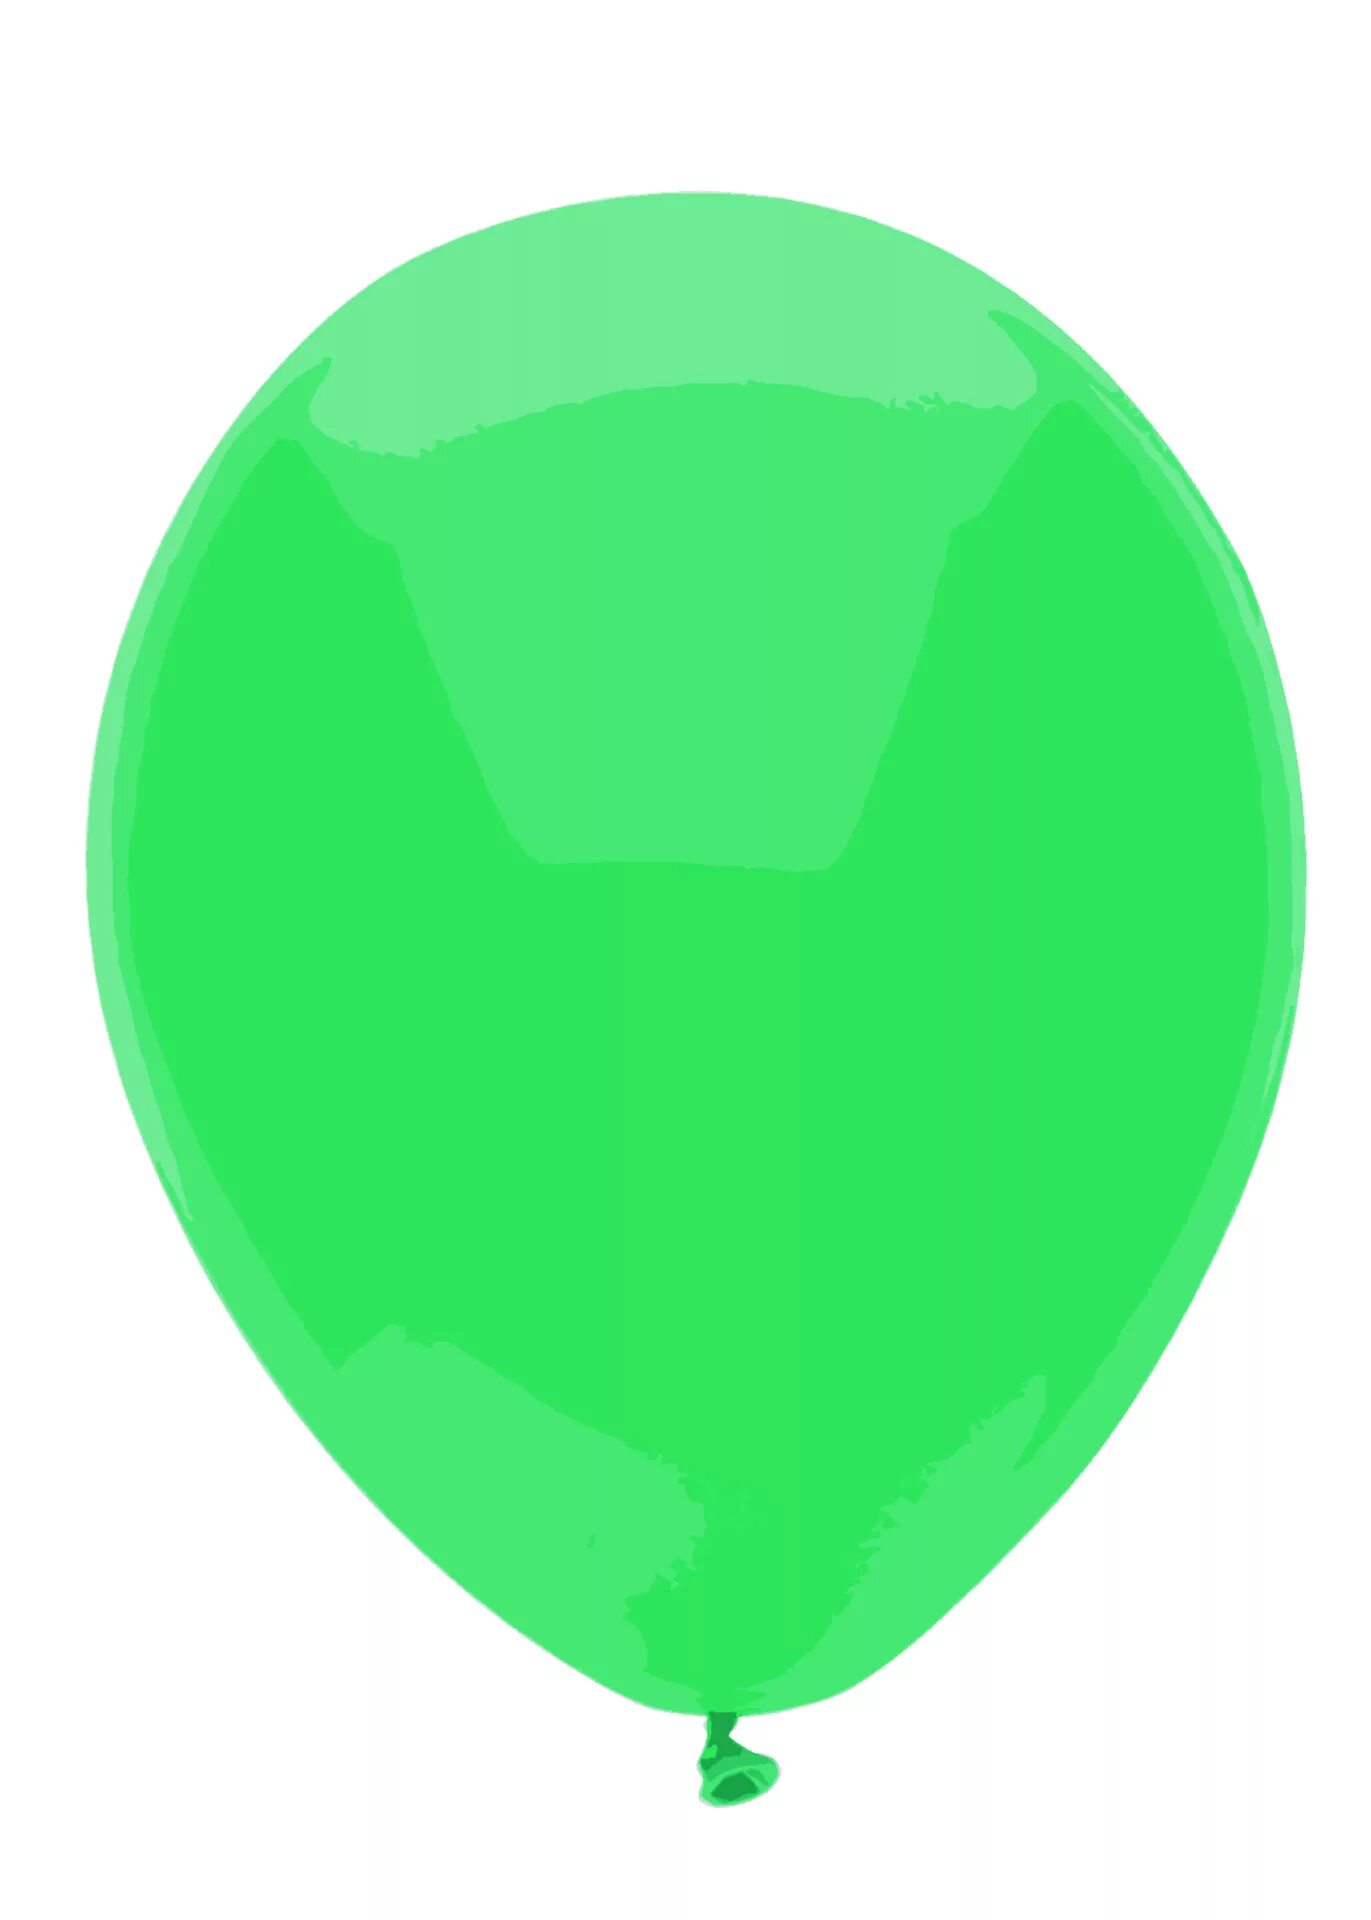 Надуваем зеленые воздушные шарики. Зеленый шарик. Воздушный шарик. Зеленый воздушный шар. Салатовый шарик.